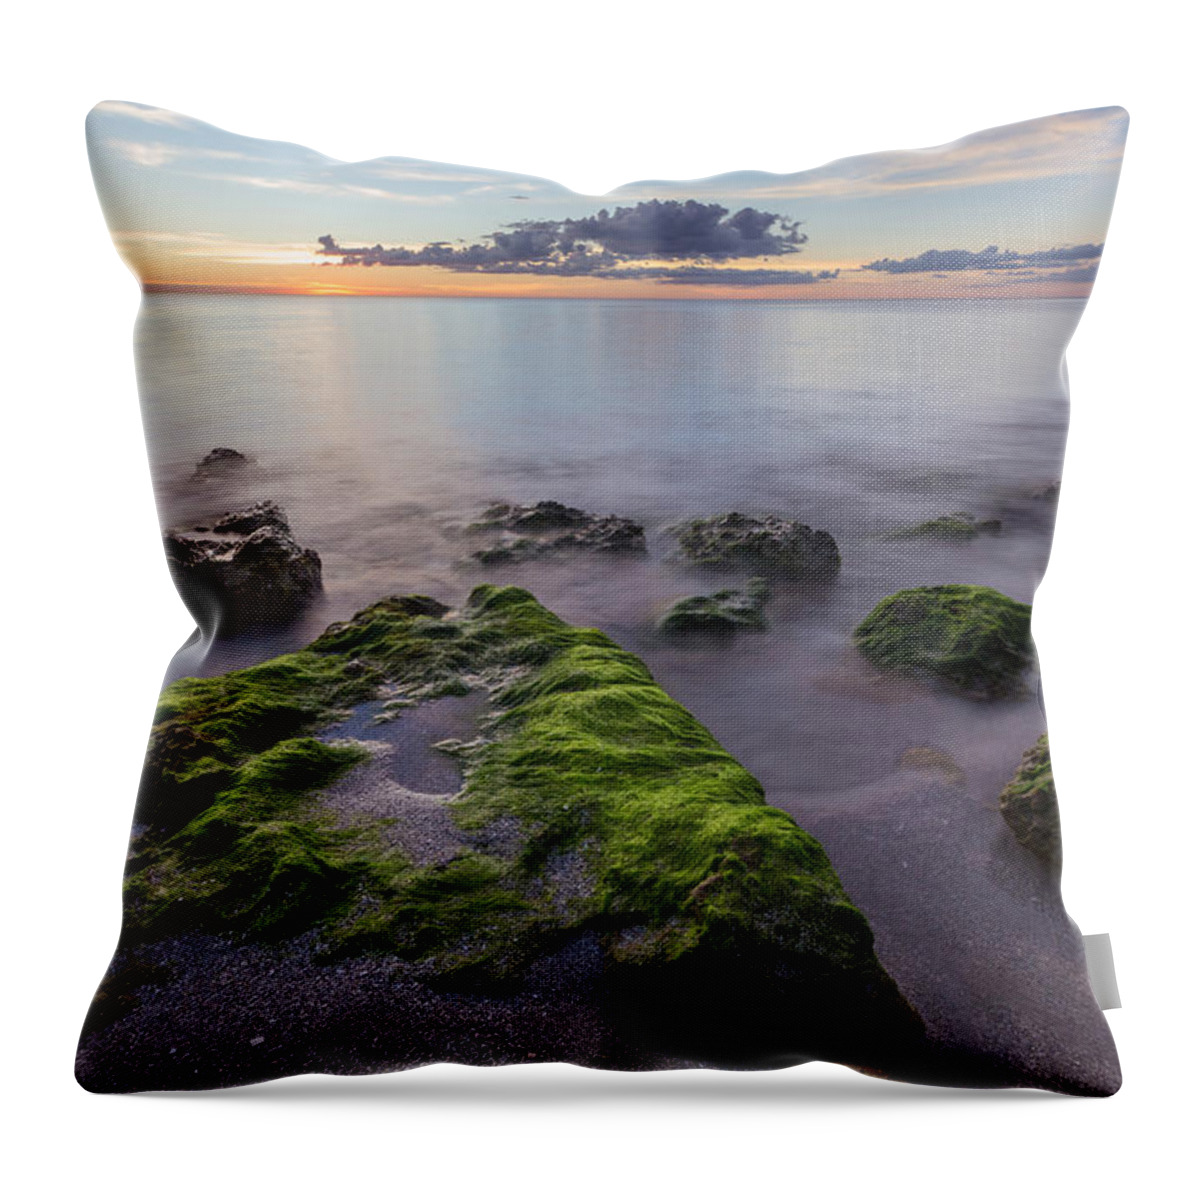 Florida Throw Pillow featuring the photograph Caspersen Beach Sunset by Paul Schultz